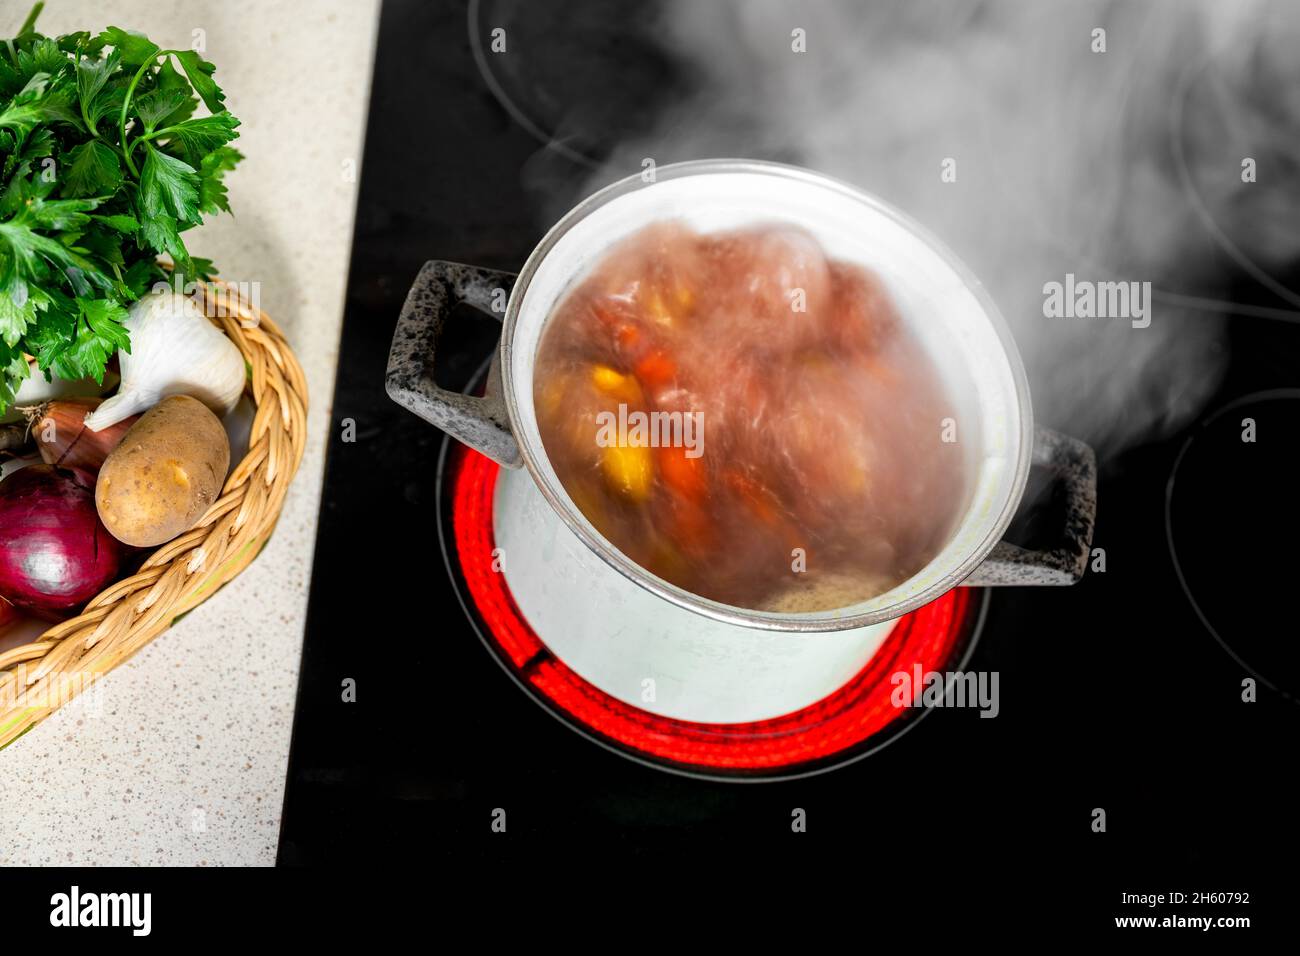 Karottensuppe kochen. Kochende Brühe mit bunten Karotten, Zwiebeln und Kartoffeln im Topf. Suppe sprudelt und raucht auf heißem Keramikkochfeld, frisches Gemüse. Stockfoto